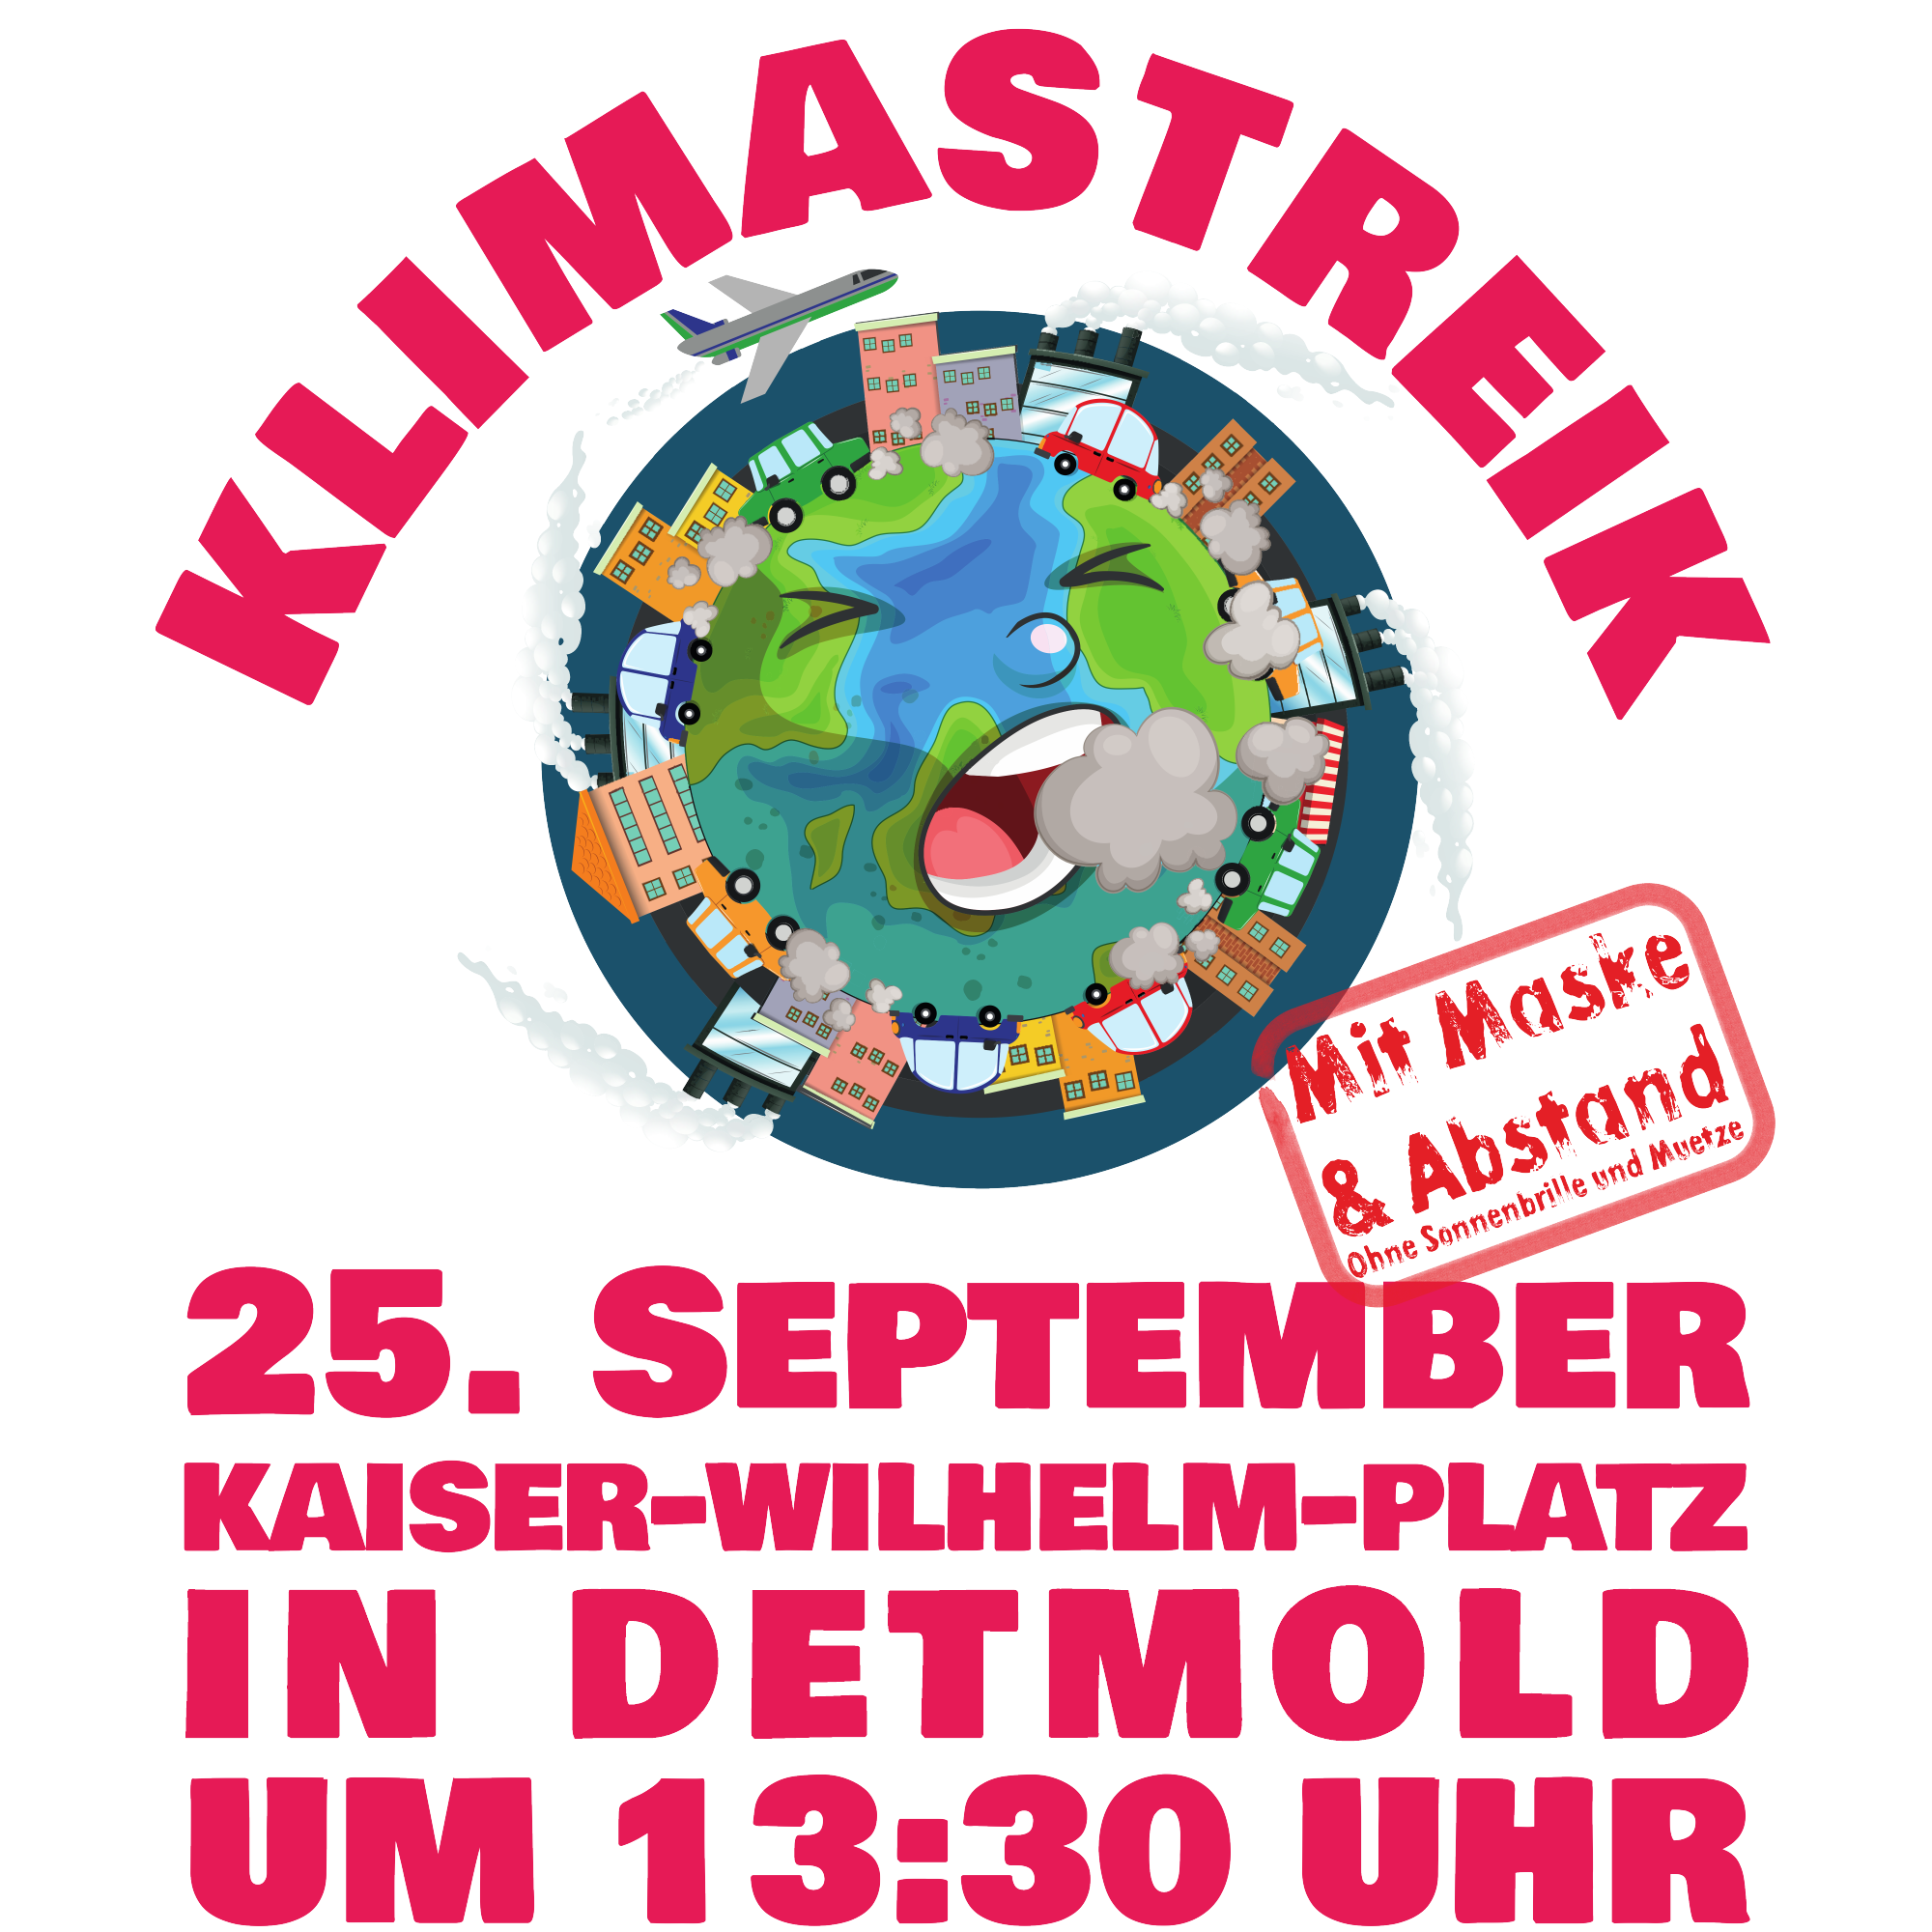 Klimademo am 25. September auf dem Kaiser-Wilhelm-Platz in Detmold